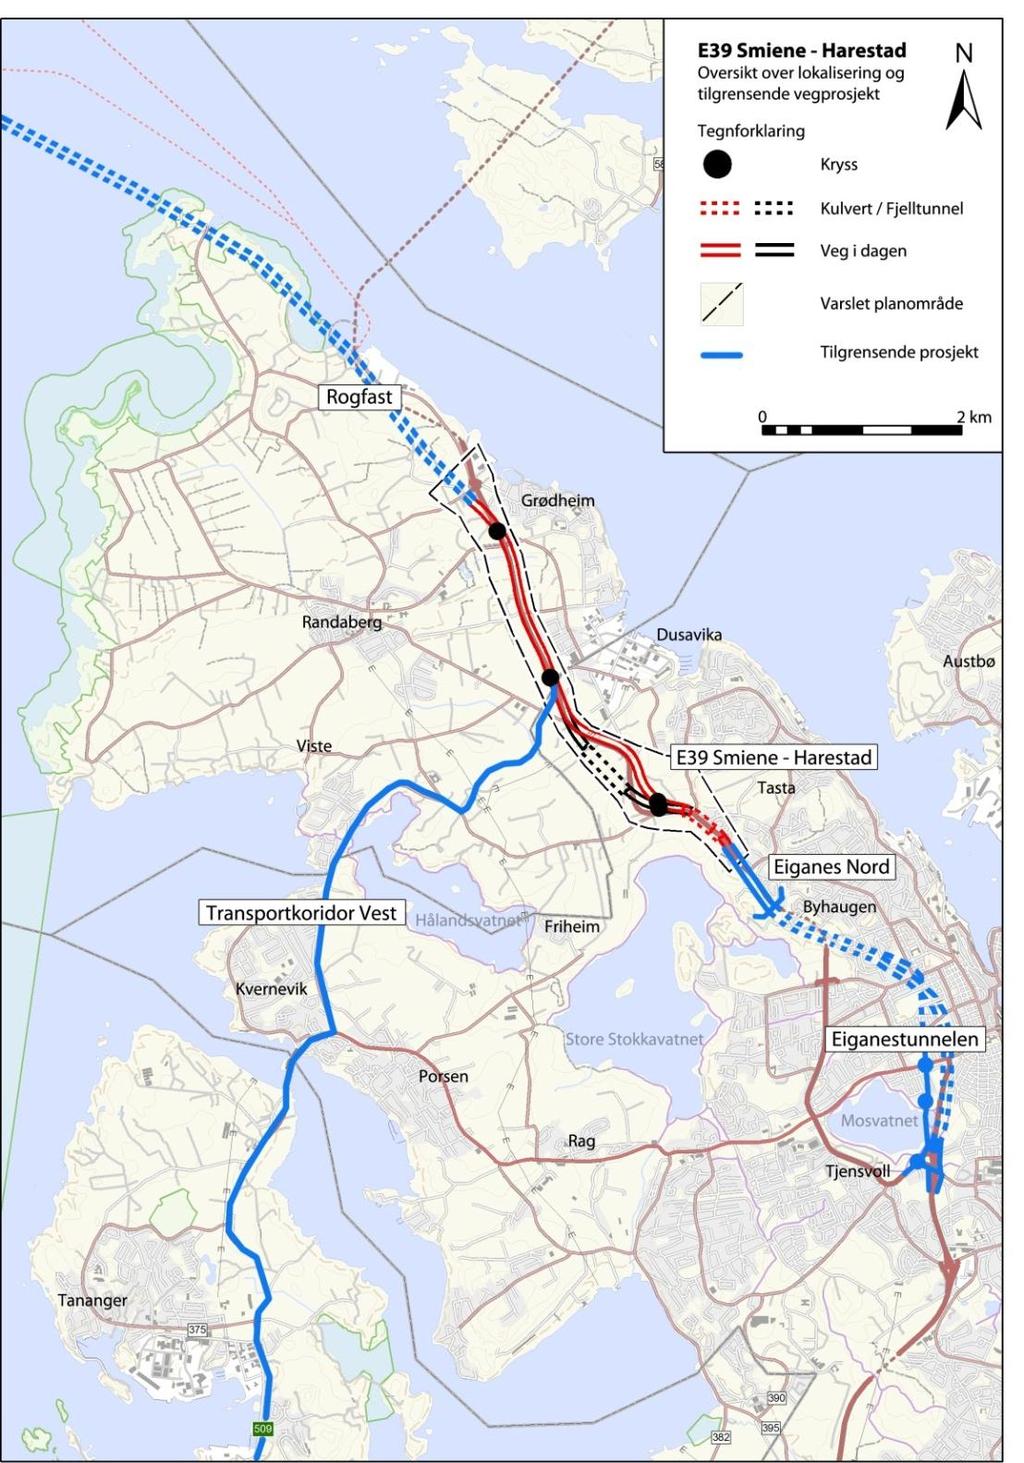 Lokal og regional utvikling 6 2 TILTAKET 2.1 Bakgrunn Kommunedelplan for ny E39 gjelder en cirka 4,5 km lang vegstrekning mellom Smiene i Stavanger kommune til Harestad i Randaberg kommune.